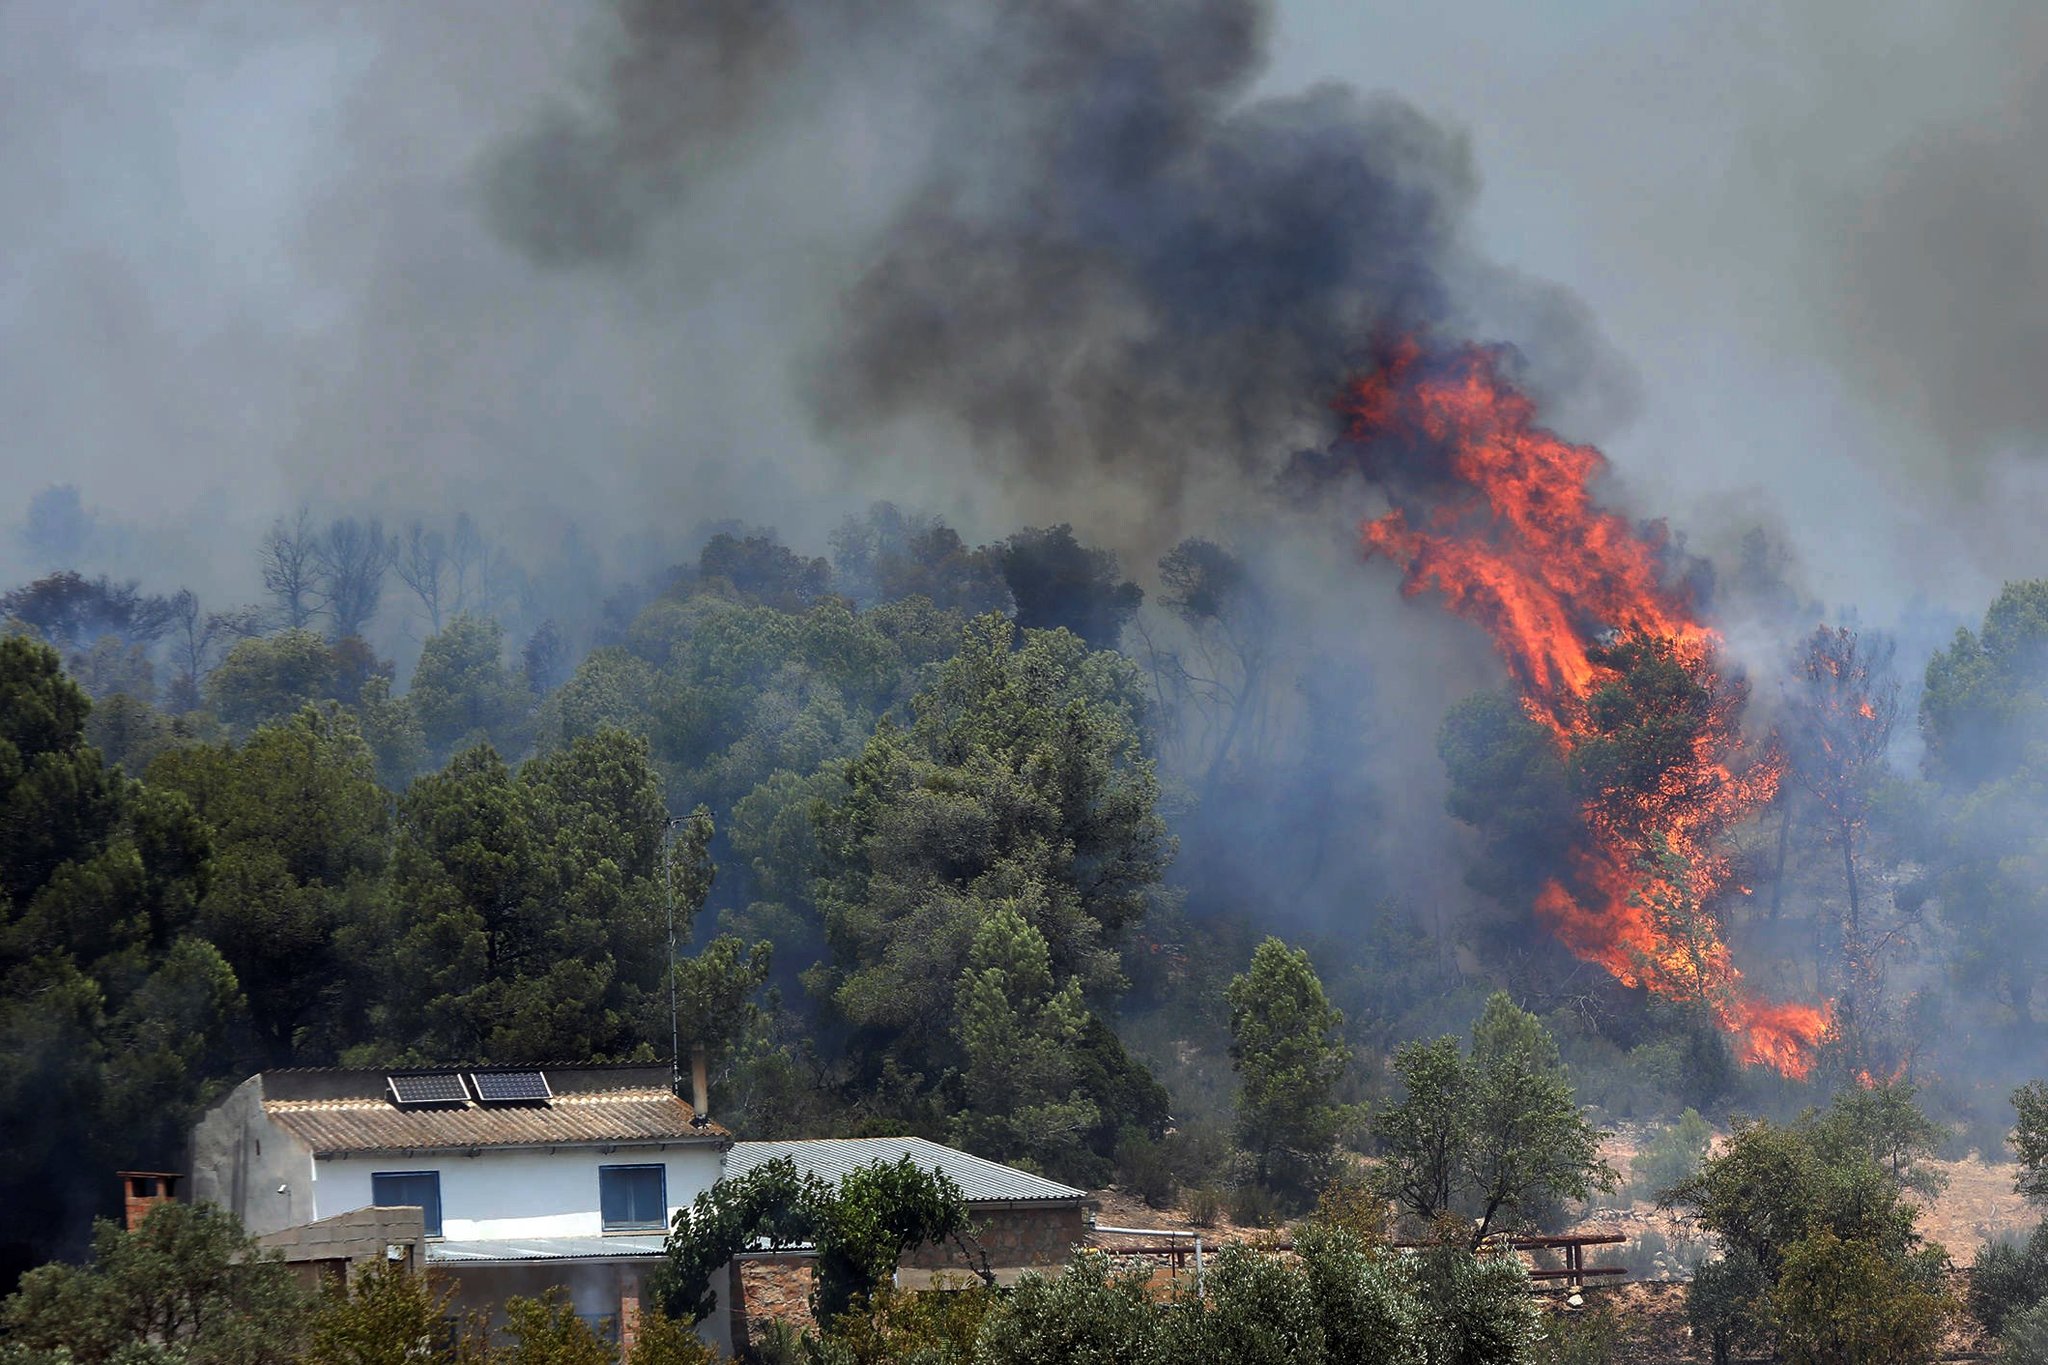 A forest fire in Tarragona, Spain, southwest of Barcelona, on 27 June 2019. Photo: Jaume Sellart / EPA / Shutterstock